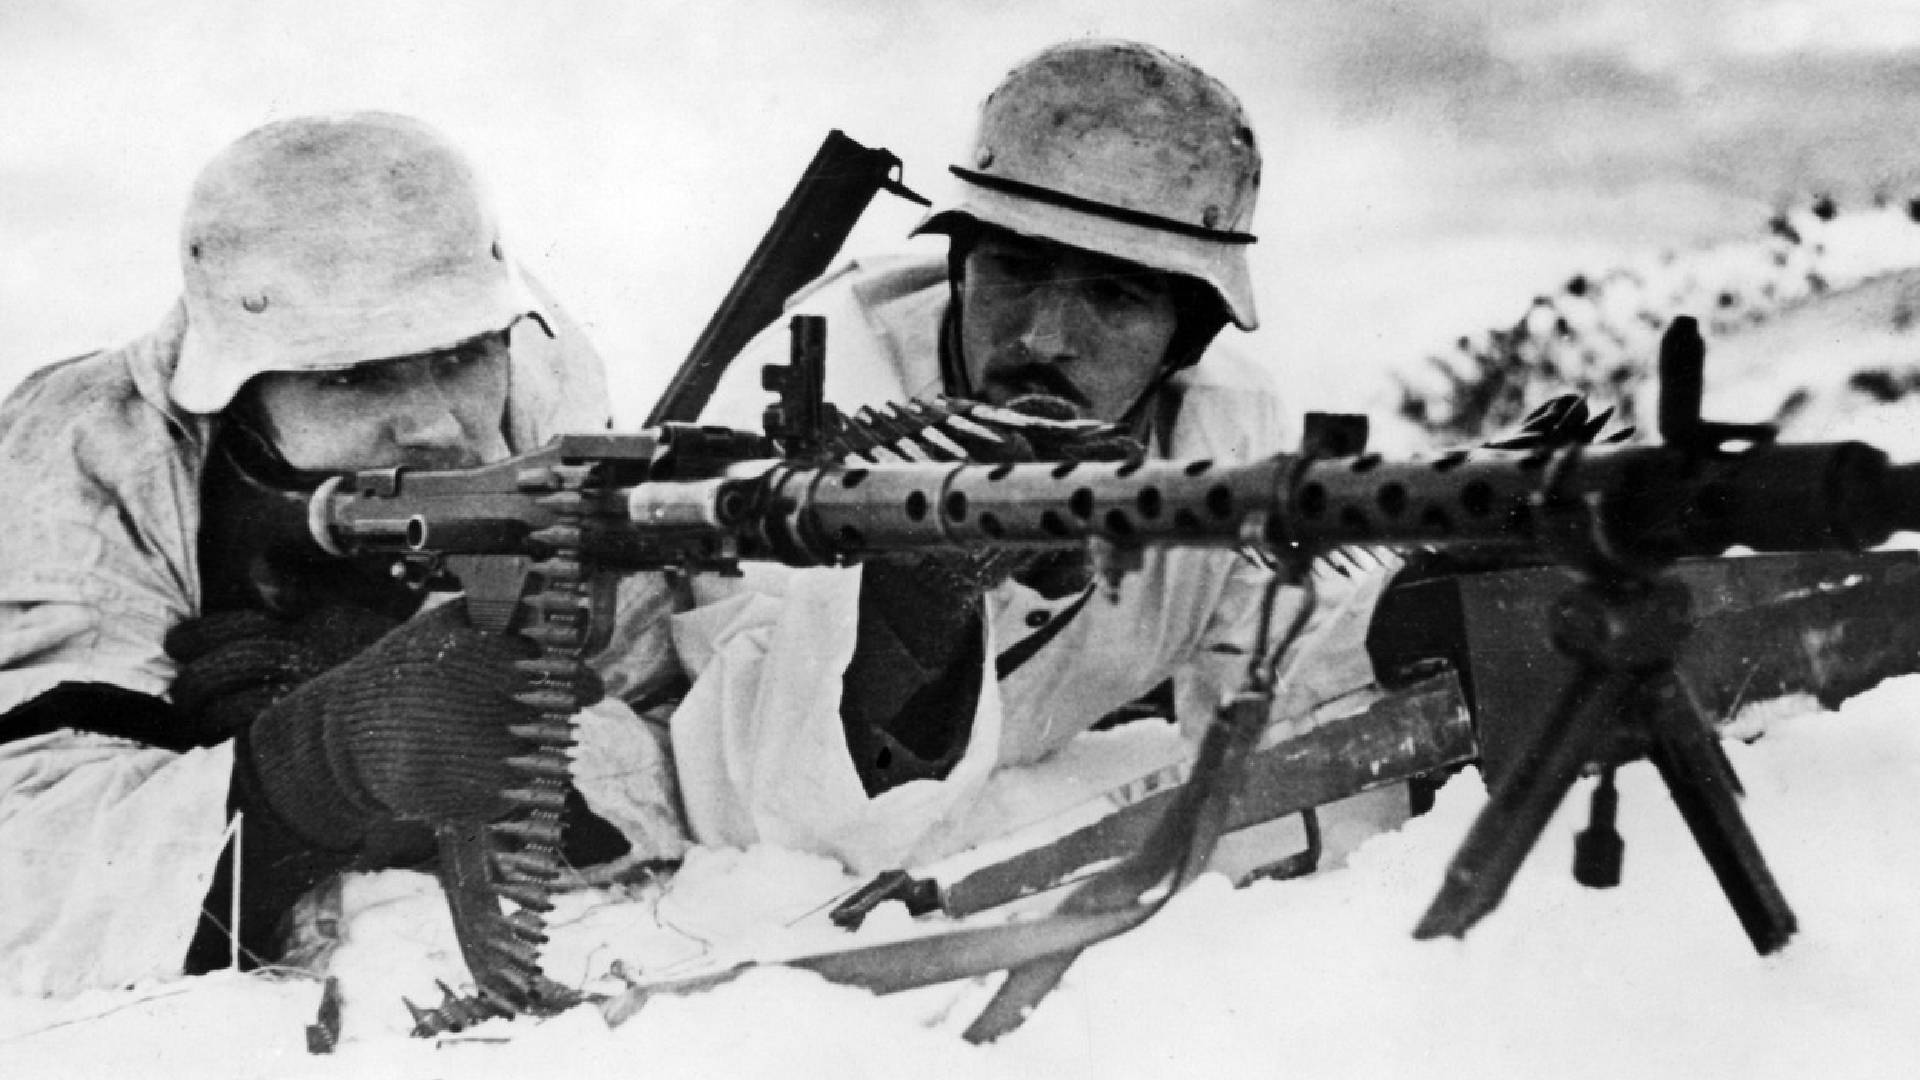 Kulomet MG 34 na východní frontě 